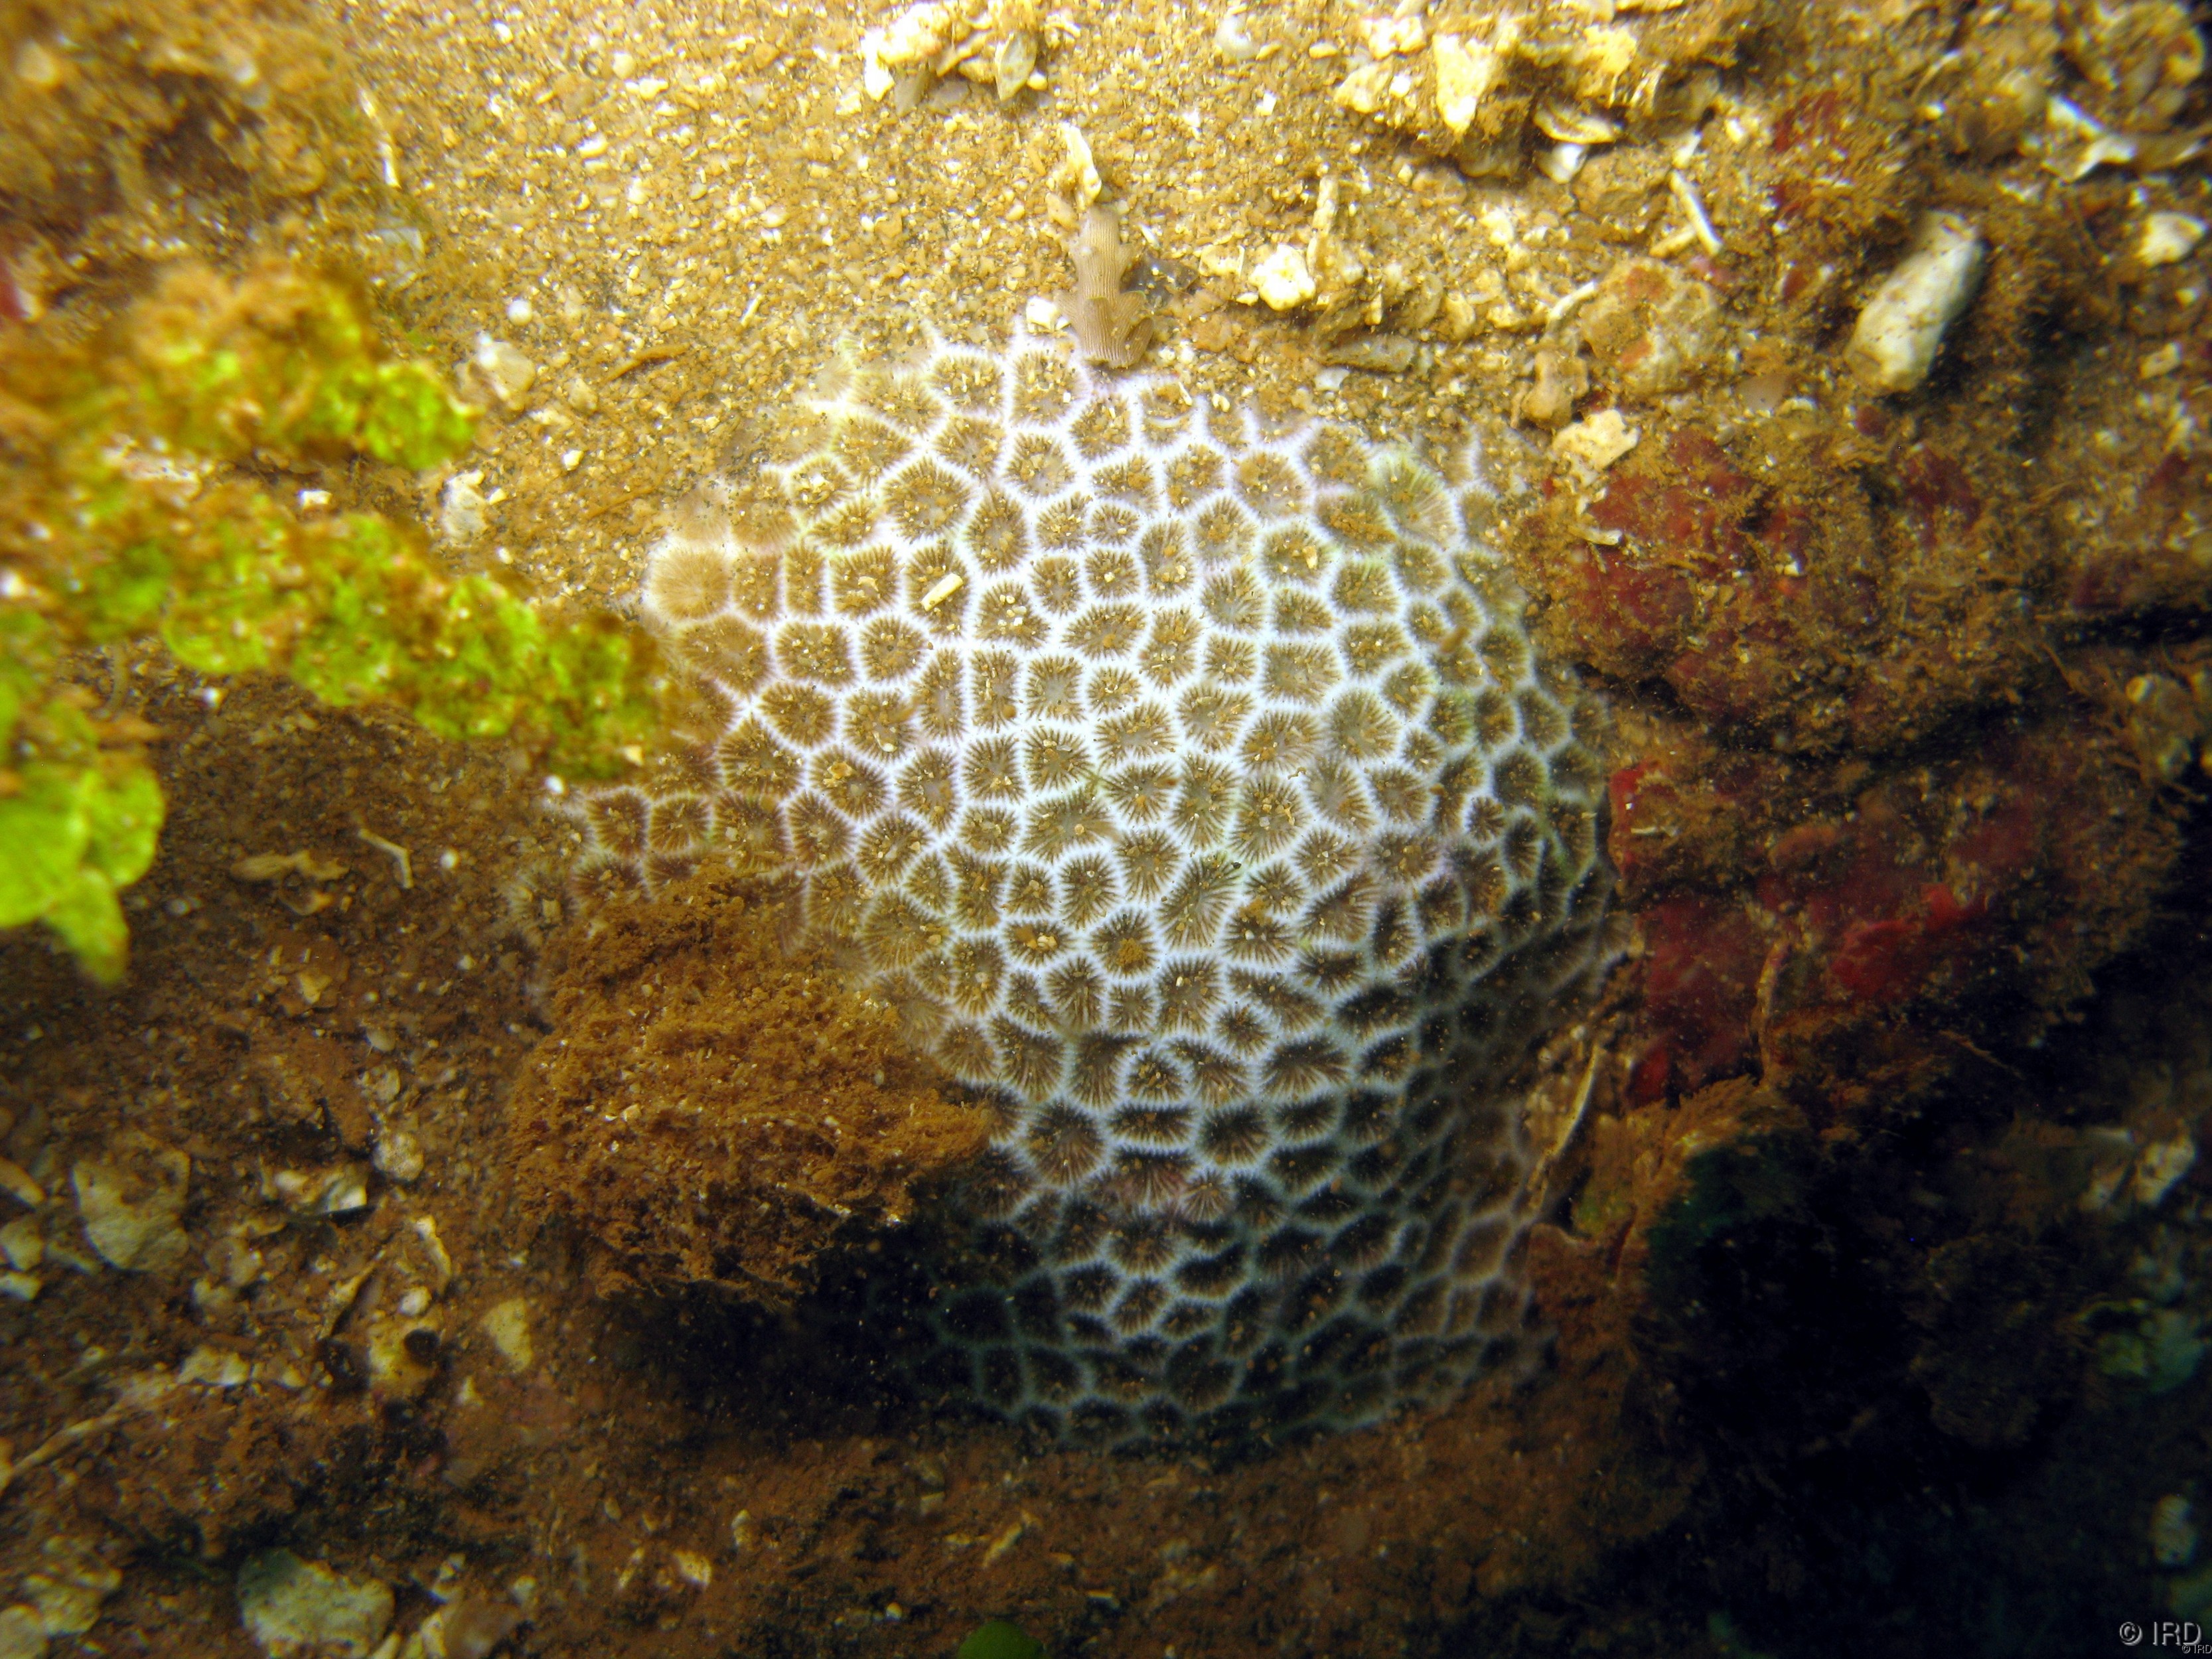 Pseudosiderastrea tayamai - Colony in situ - HS1908